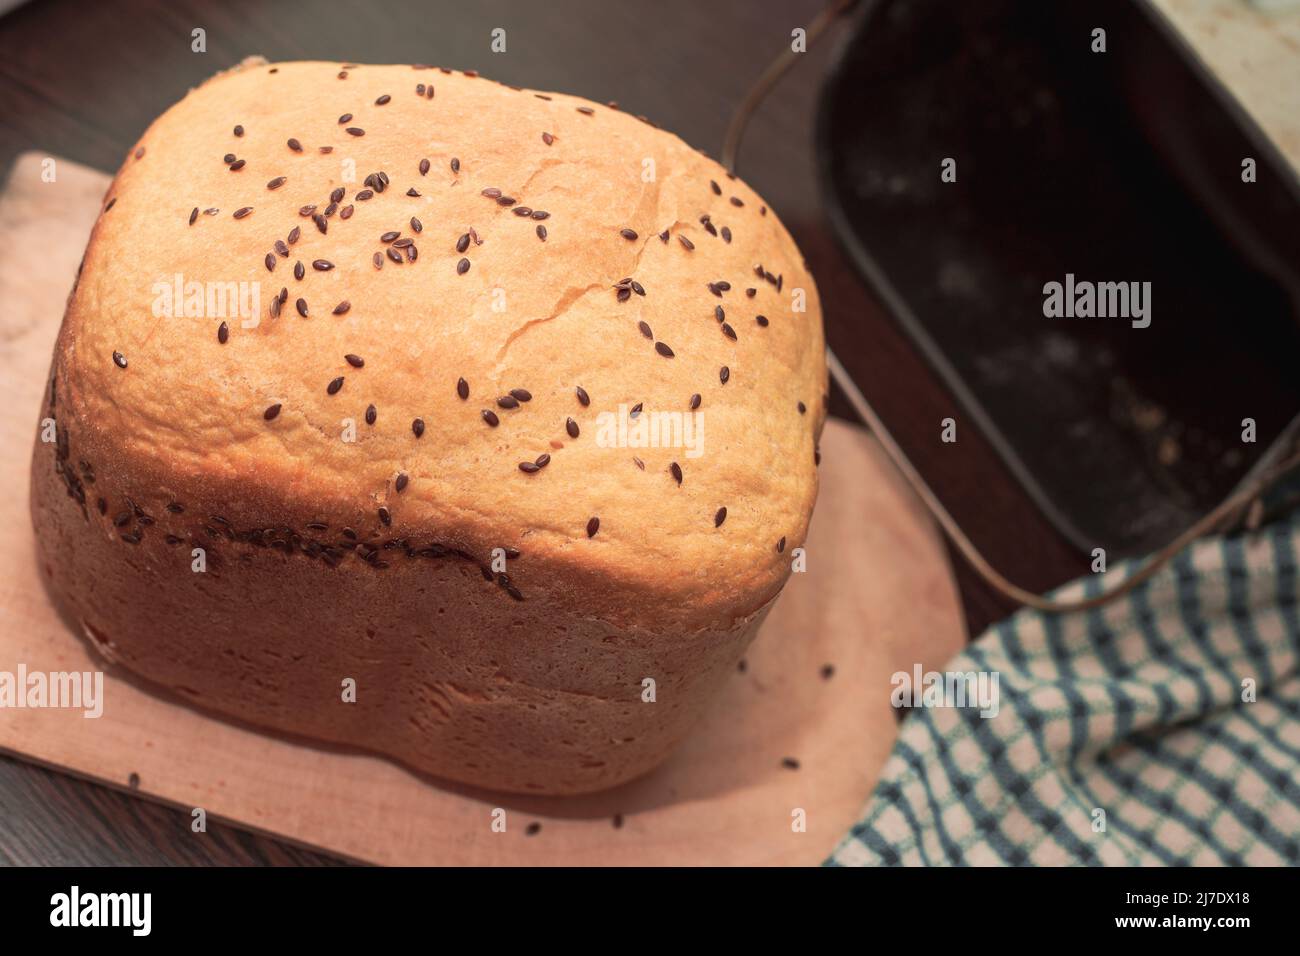 Frisches, selbstgebackenes Brot, bestreut mit Flachs- und Sesamsamen, in einer Brotmaschine gebacken. Köstliches hausgemachtes Gebäck. Stockfoto